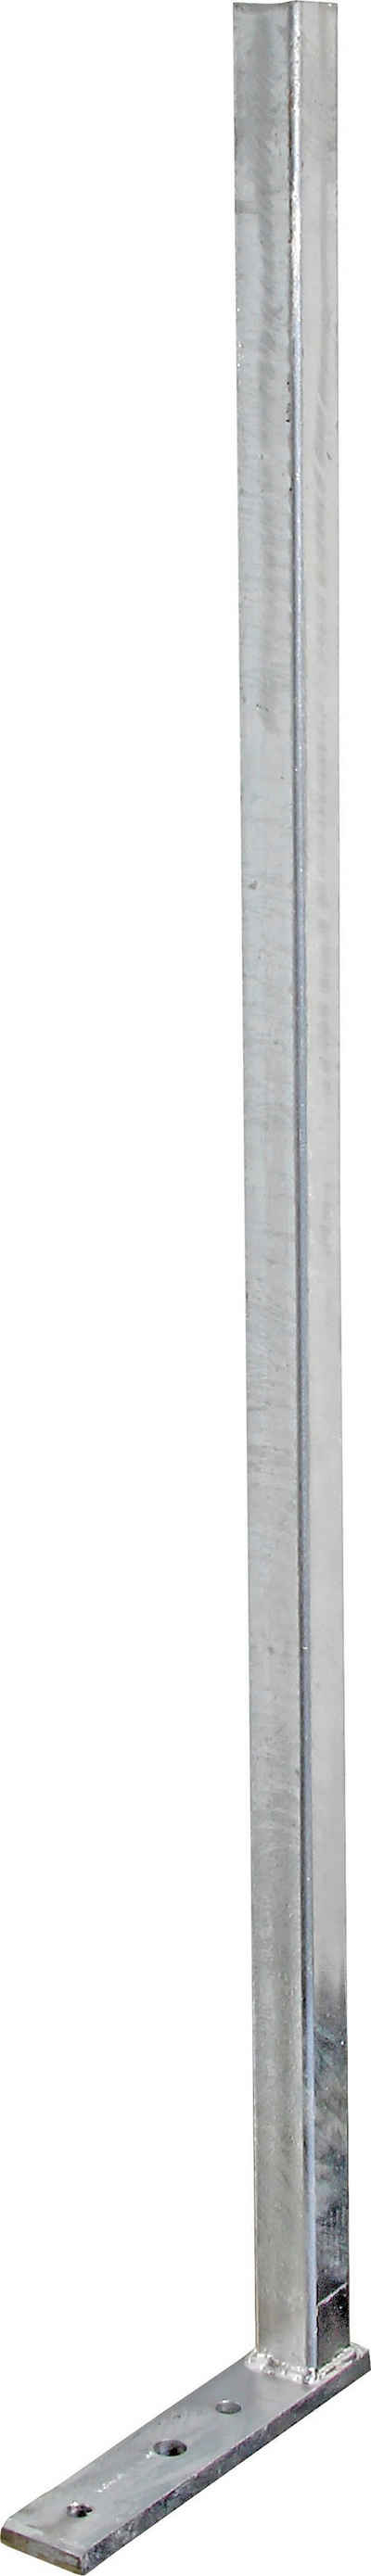 Alberts Zaunpfosten, zum Aufschrauben, Länge 950 mm, Pfosten 30 x 30 mm